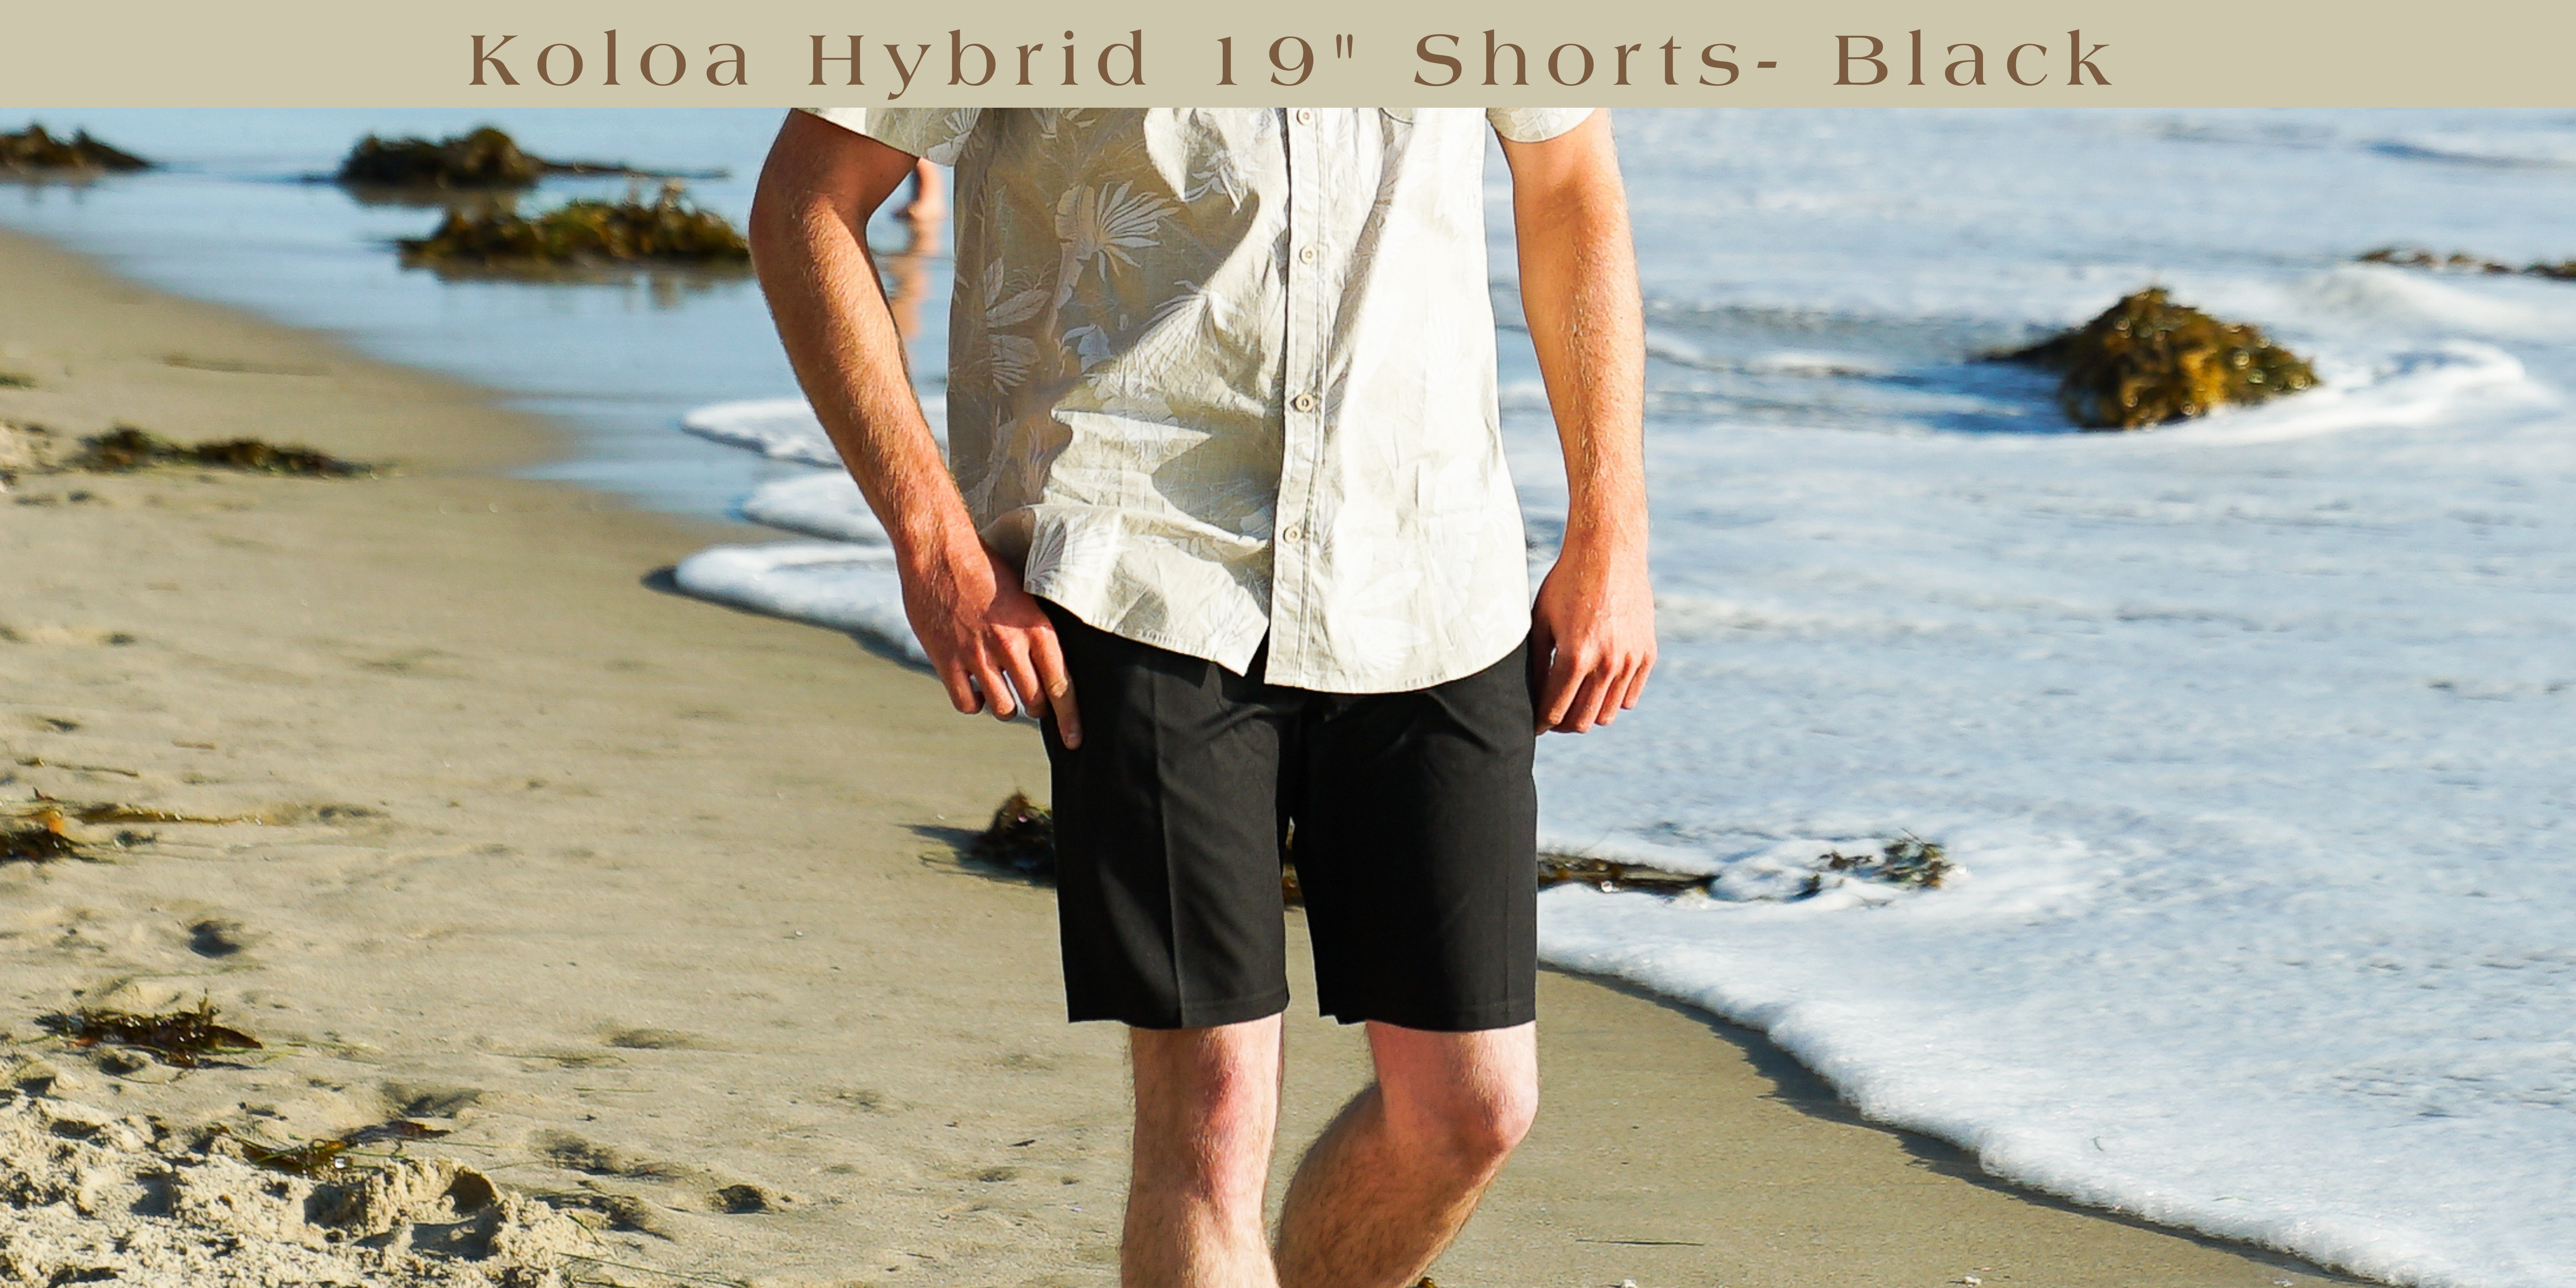 Koloa Hybrid 19" Shorts- Black